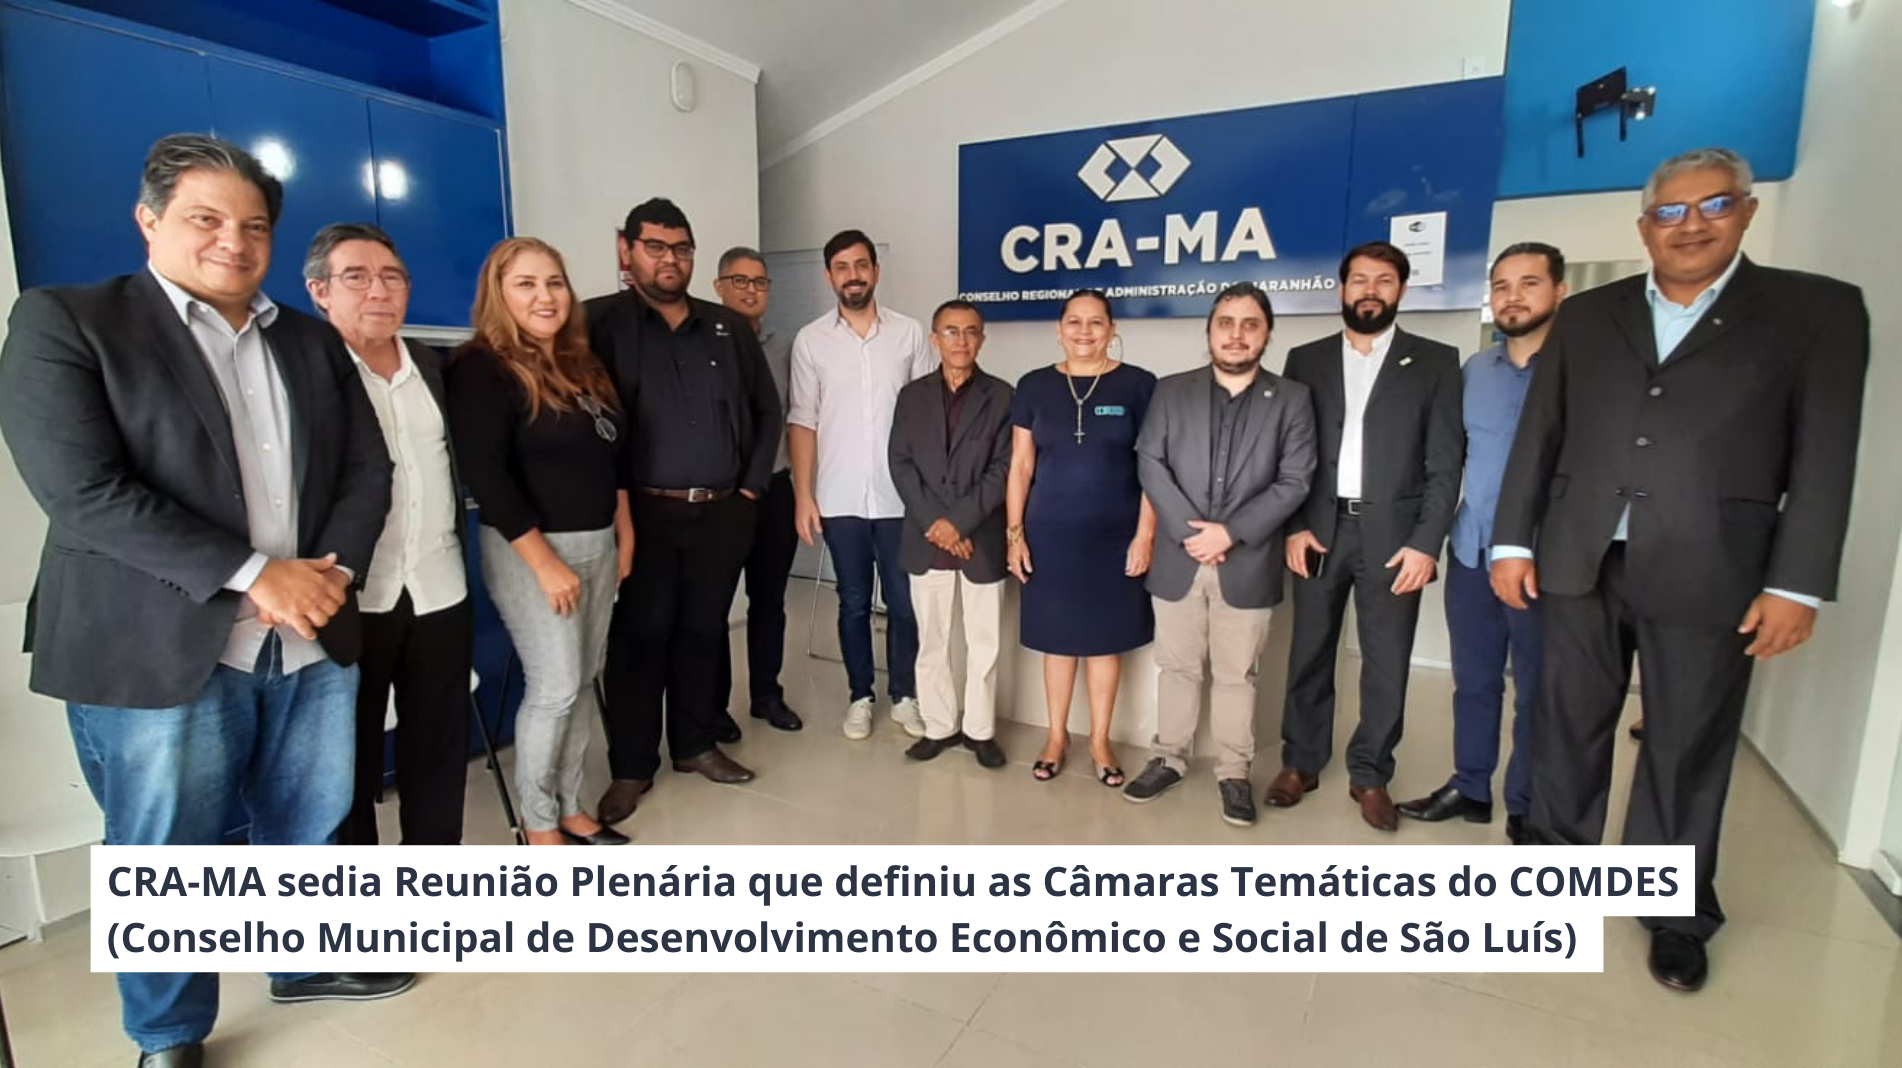 You are currently viewing CRA-MA sedia Reunião Plenária que definiu as Câmaras Temáticas do COMDES.